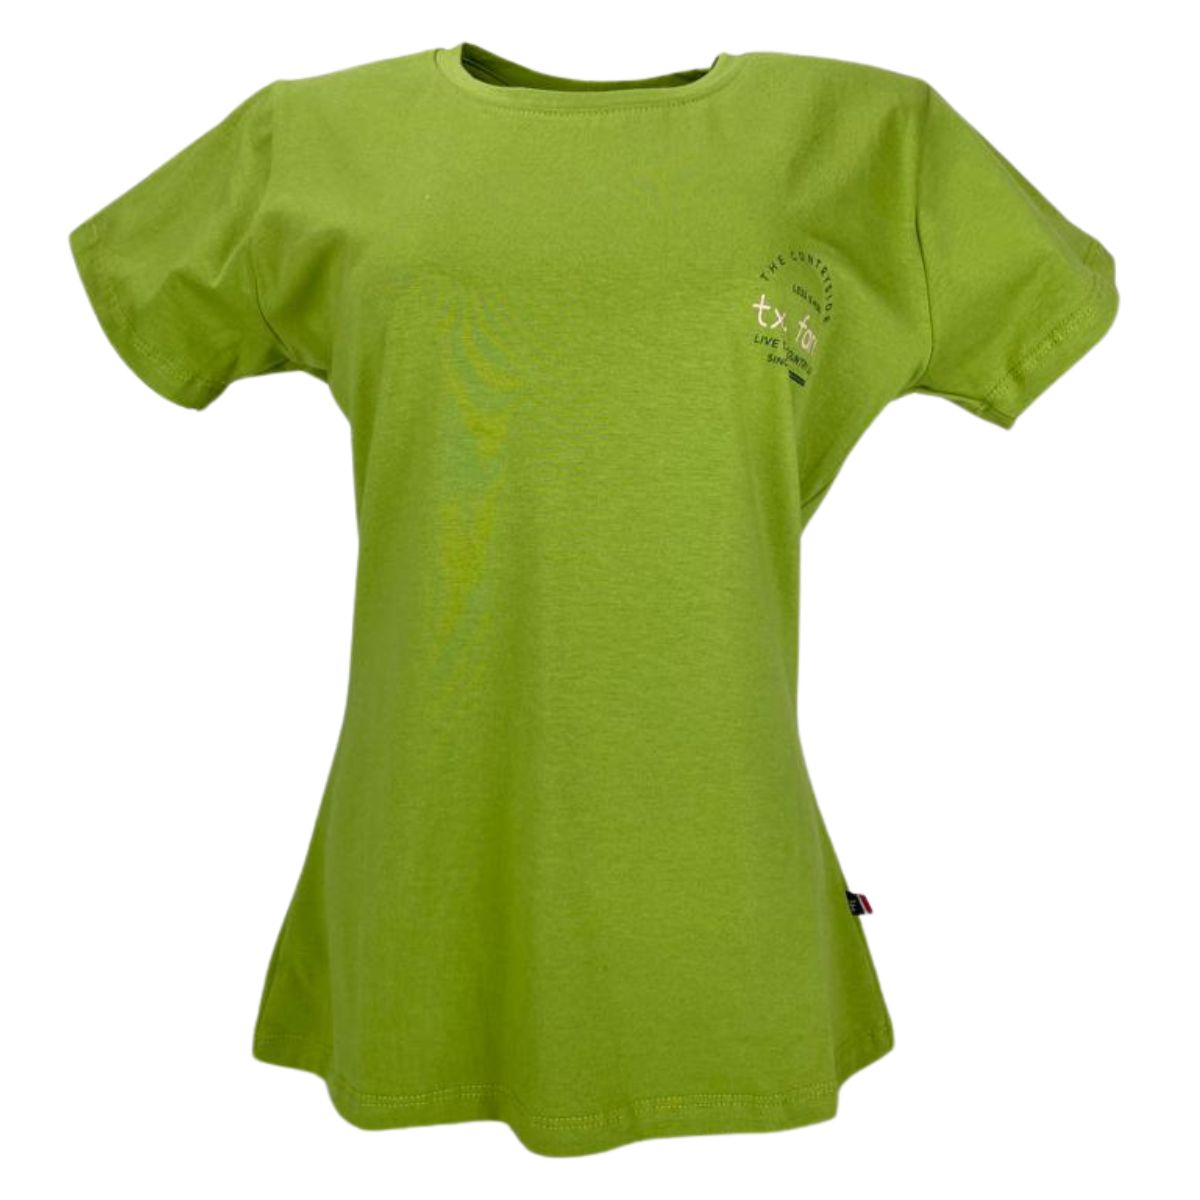 Camiseta Feminina Texas Farm Verde Less Is More Ref: CF200